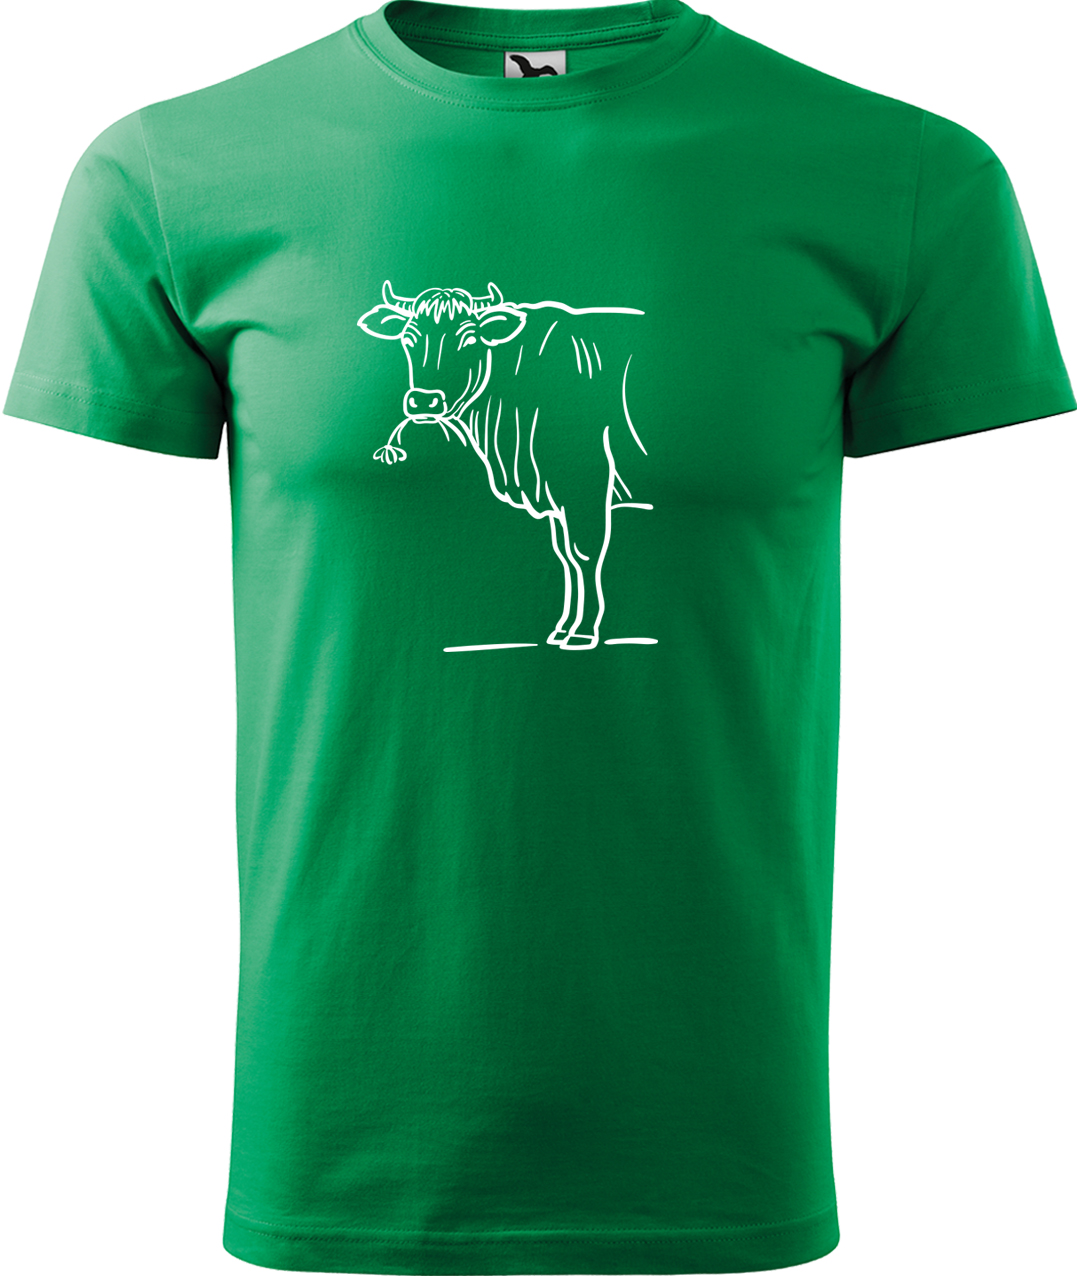 Pánské tričko s krávou - Býk Velikost: XL, Barva: Středně zelená (16), Střih: pánský